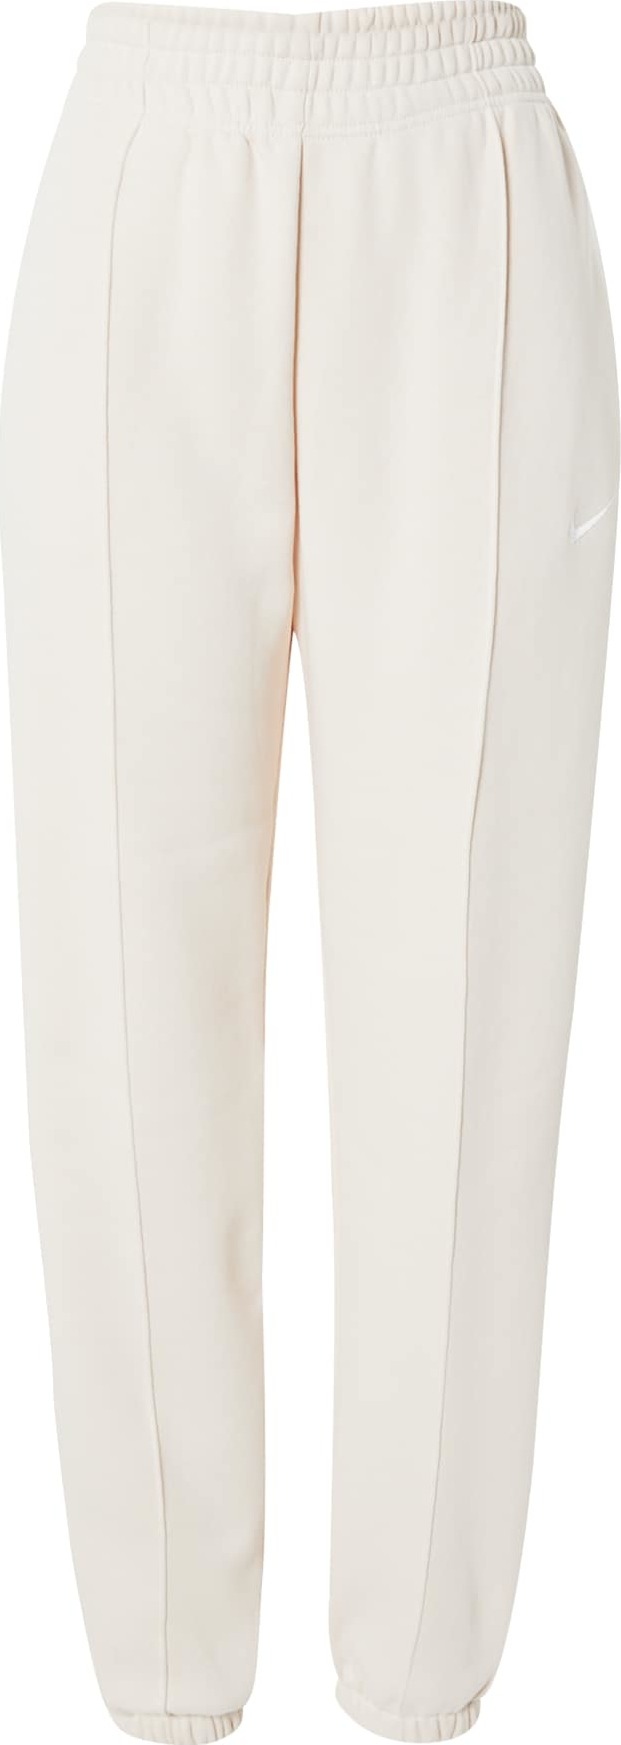 Nike Sportswear Kalhoty barva bílé vlny / bílá